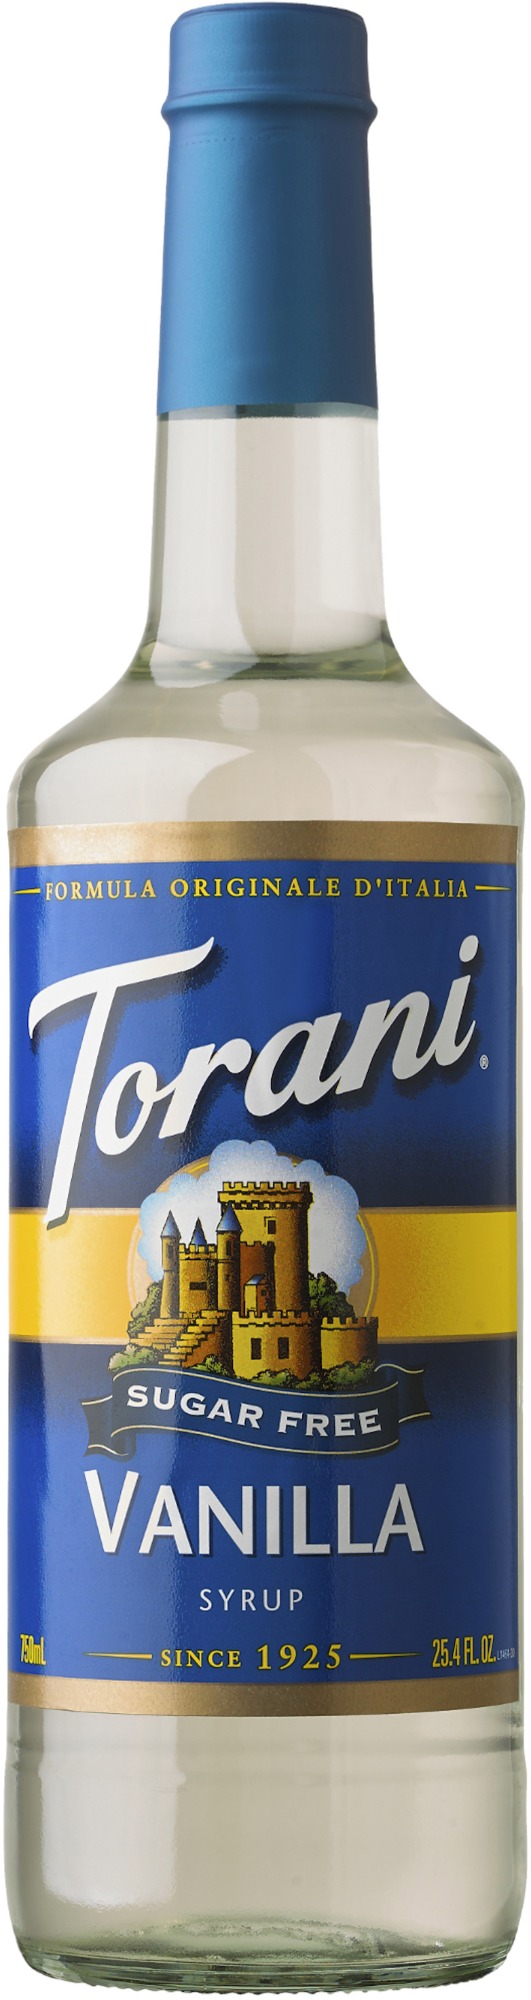 Torani pompe à sirop